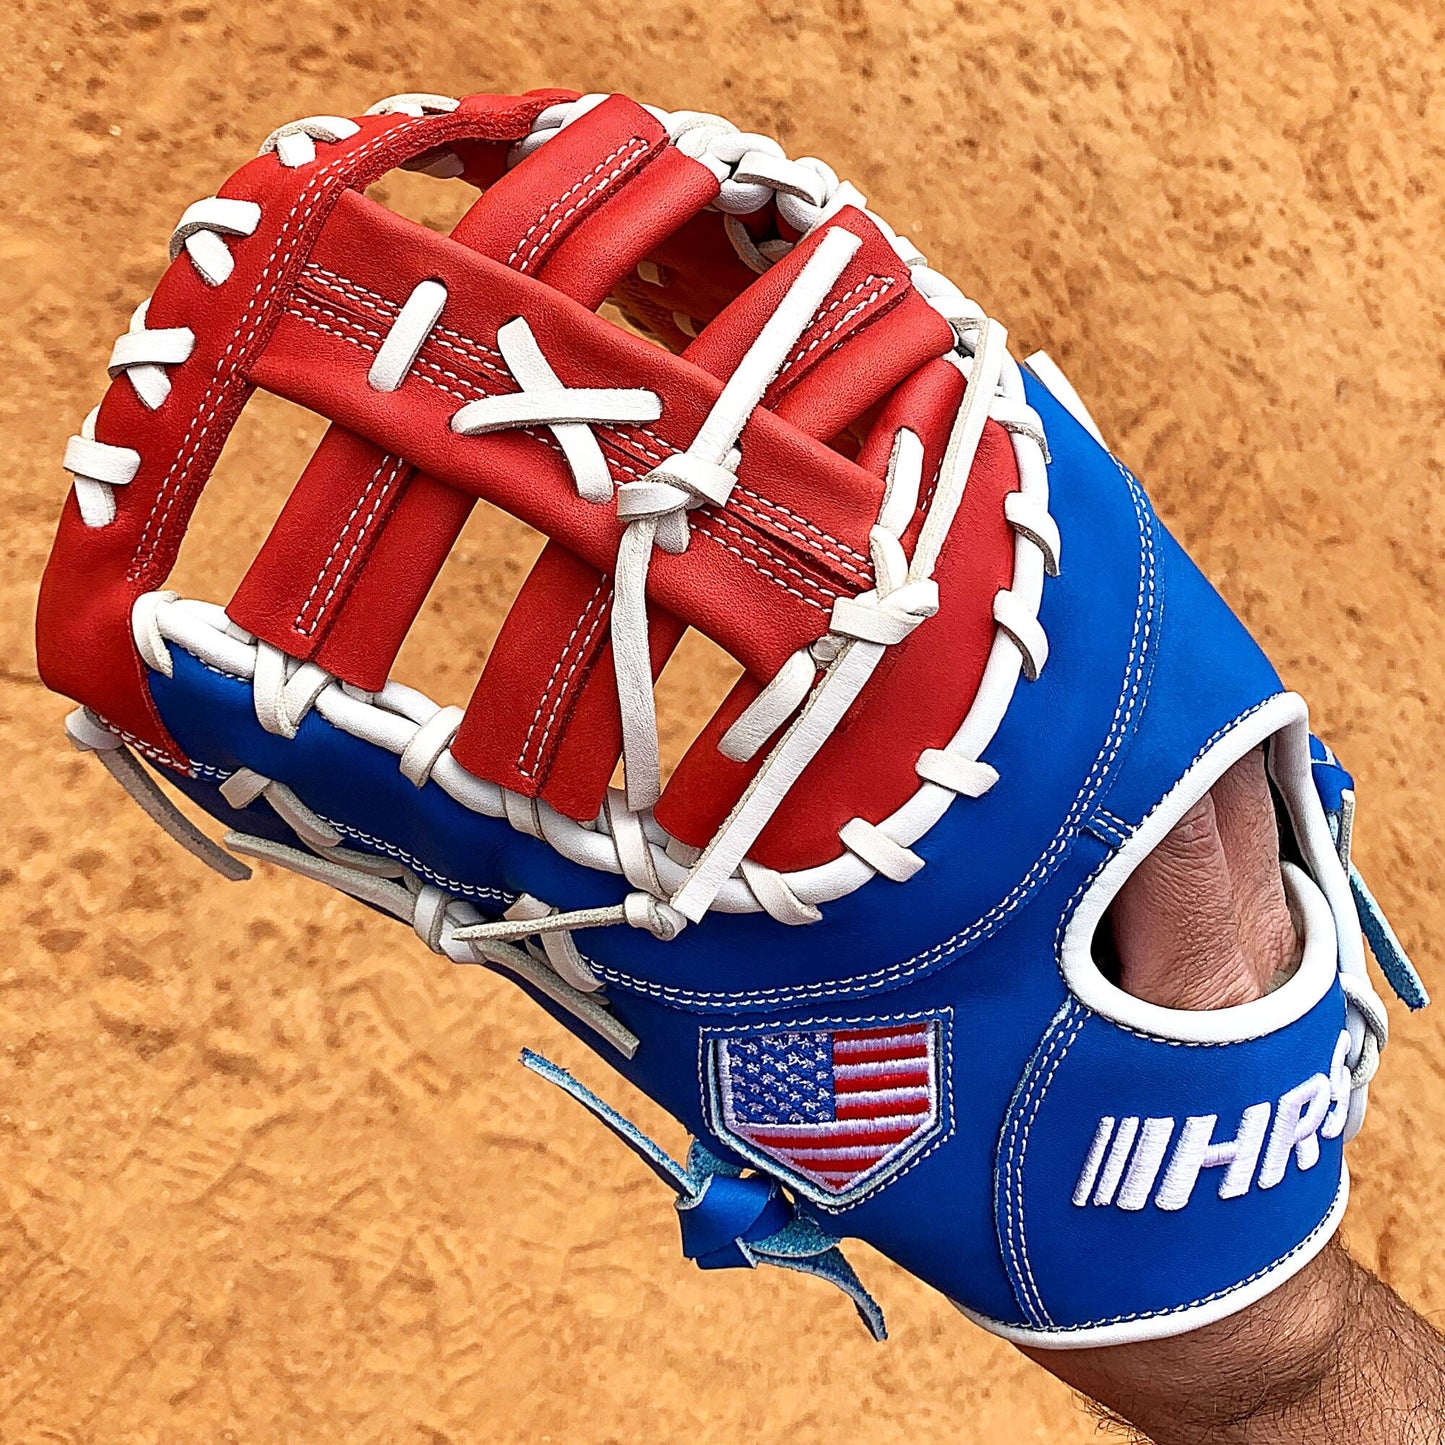 13" Baseball First Base Mitt - Red/White/Blue